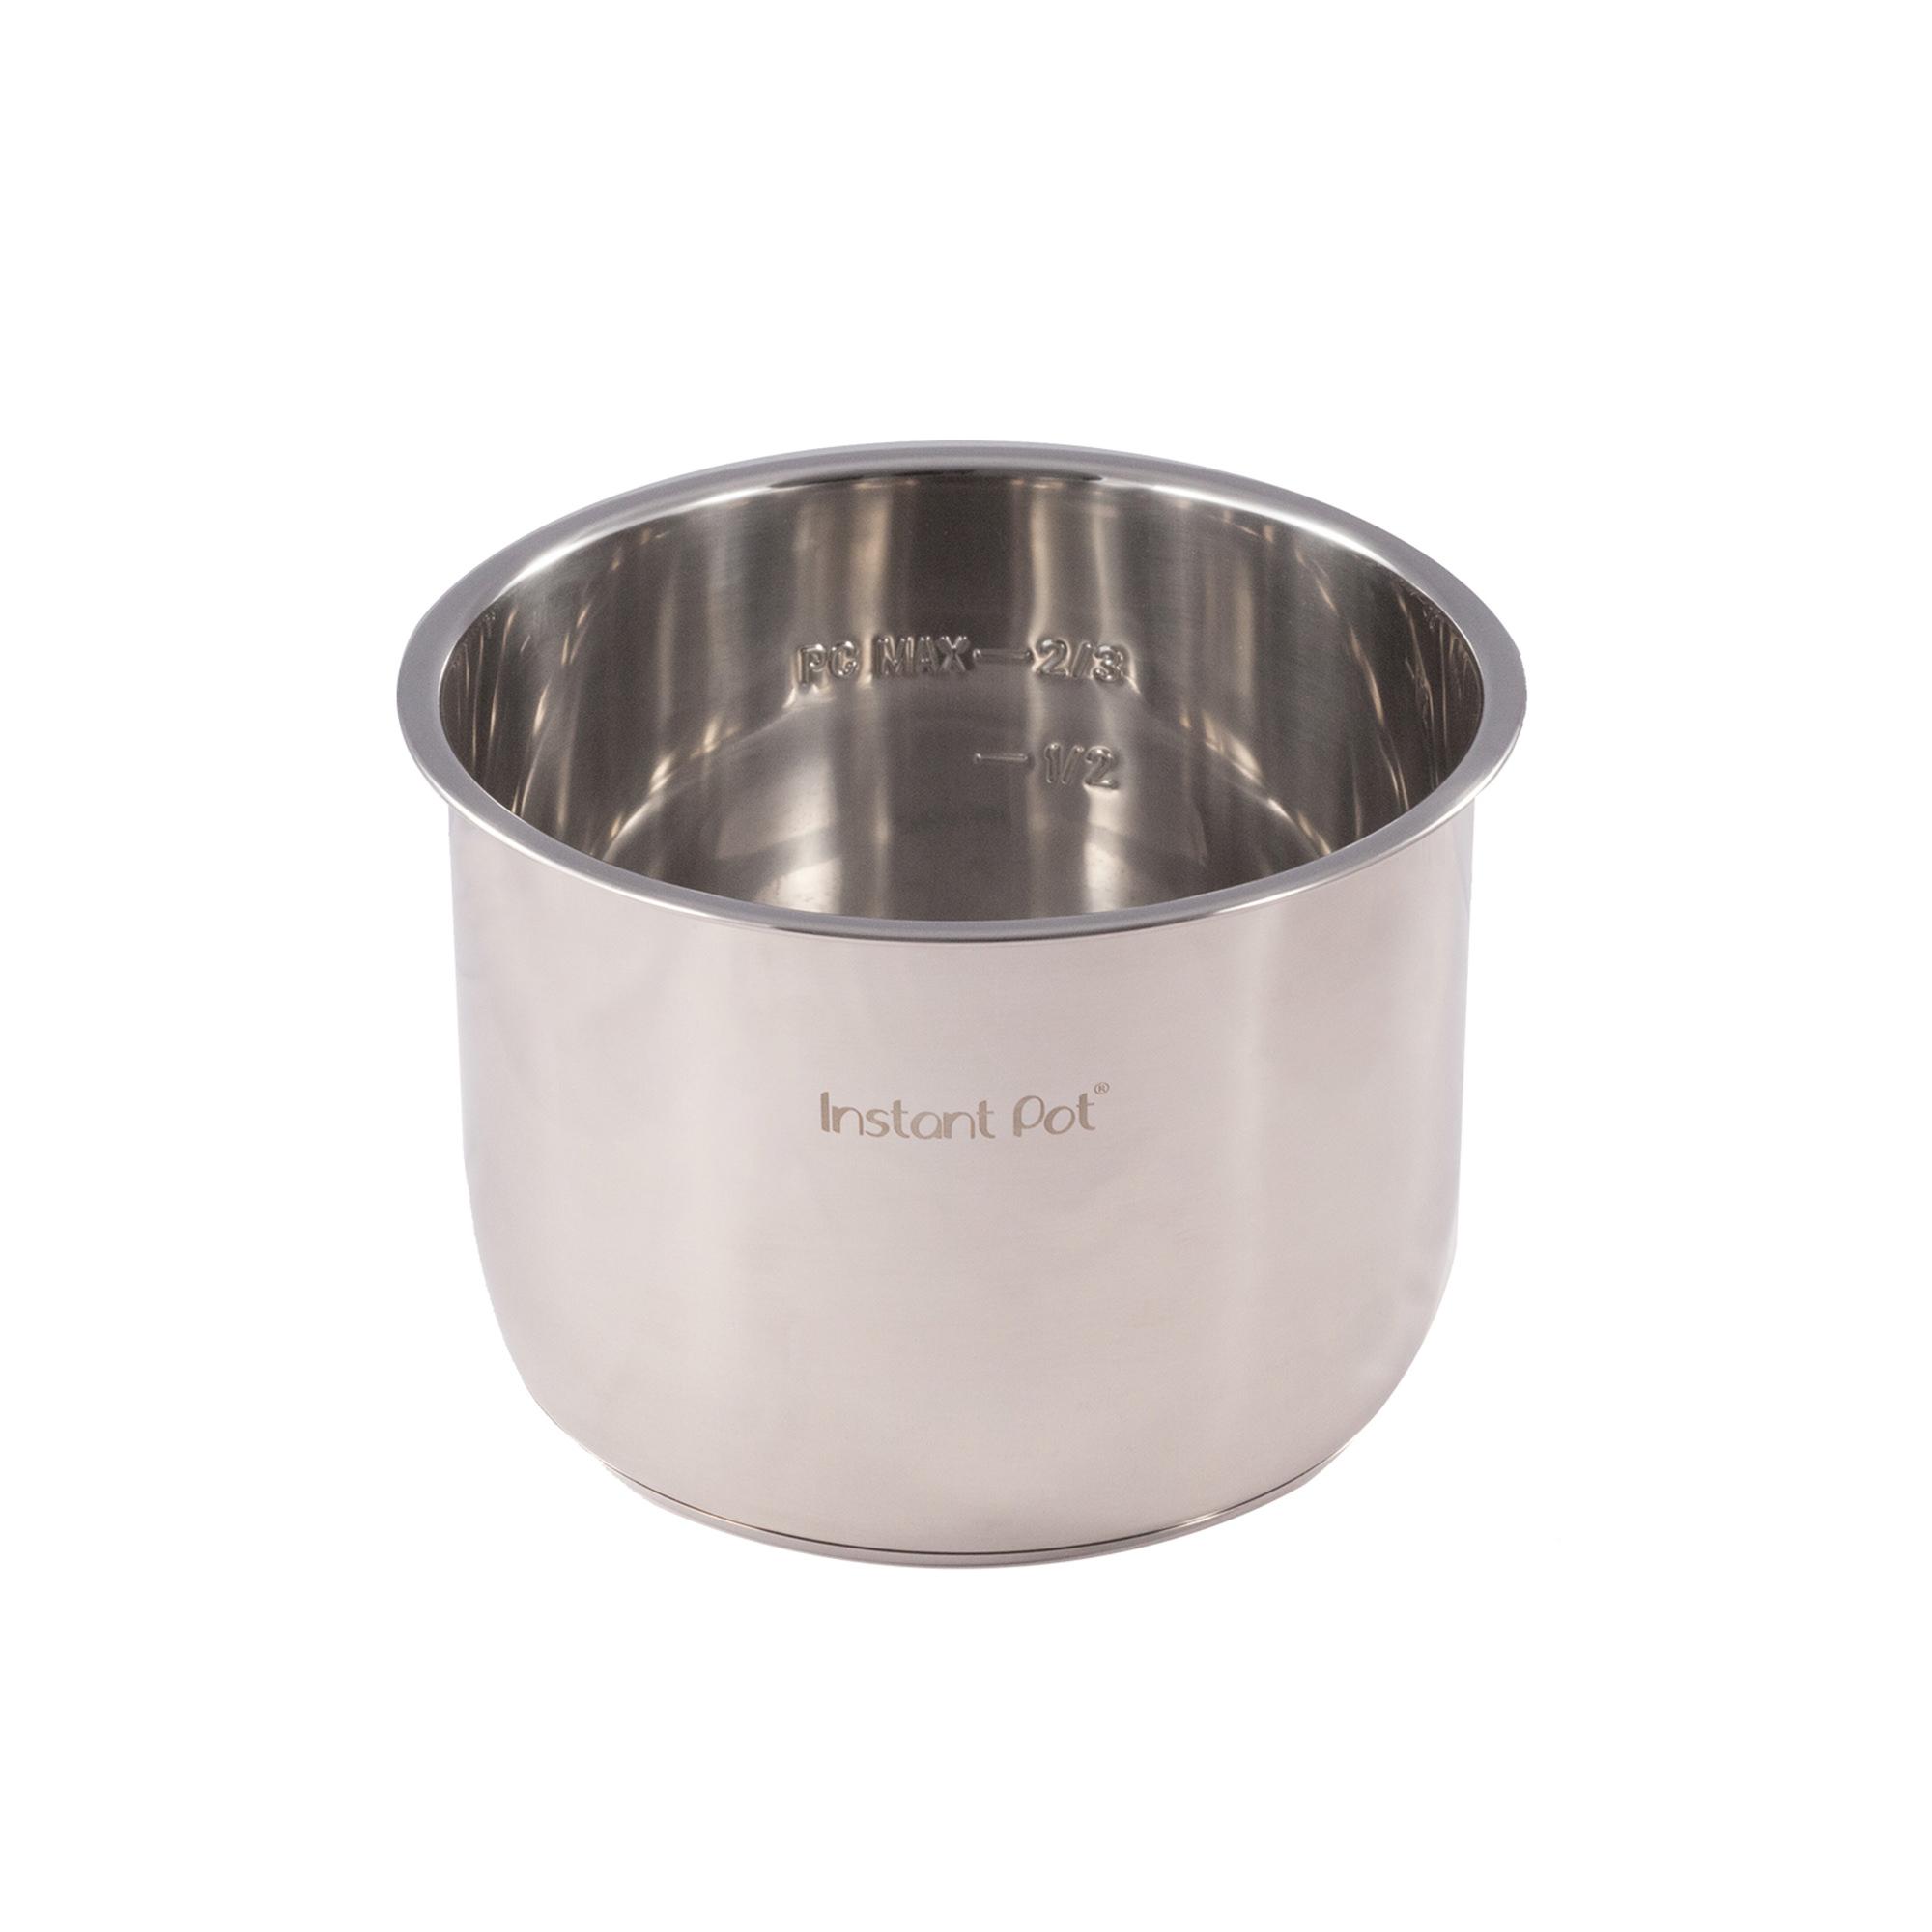 Instant Pot Stainless Steel Inner Pot for 5.7L Models Image 4